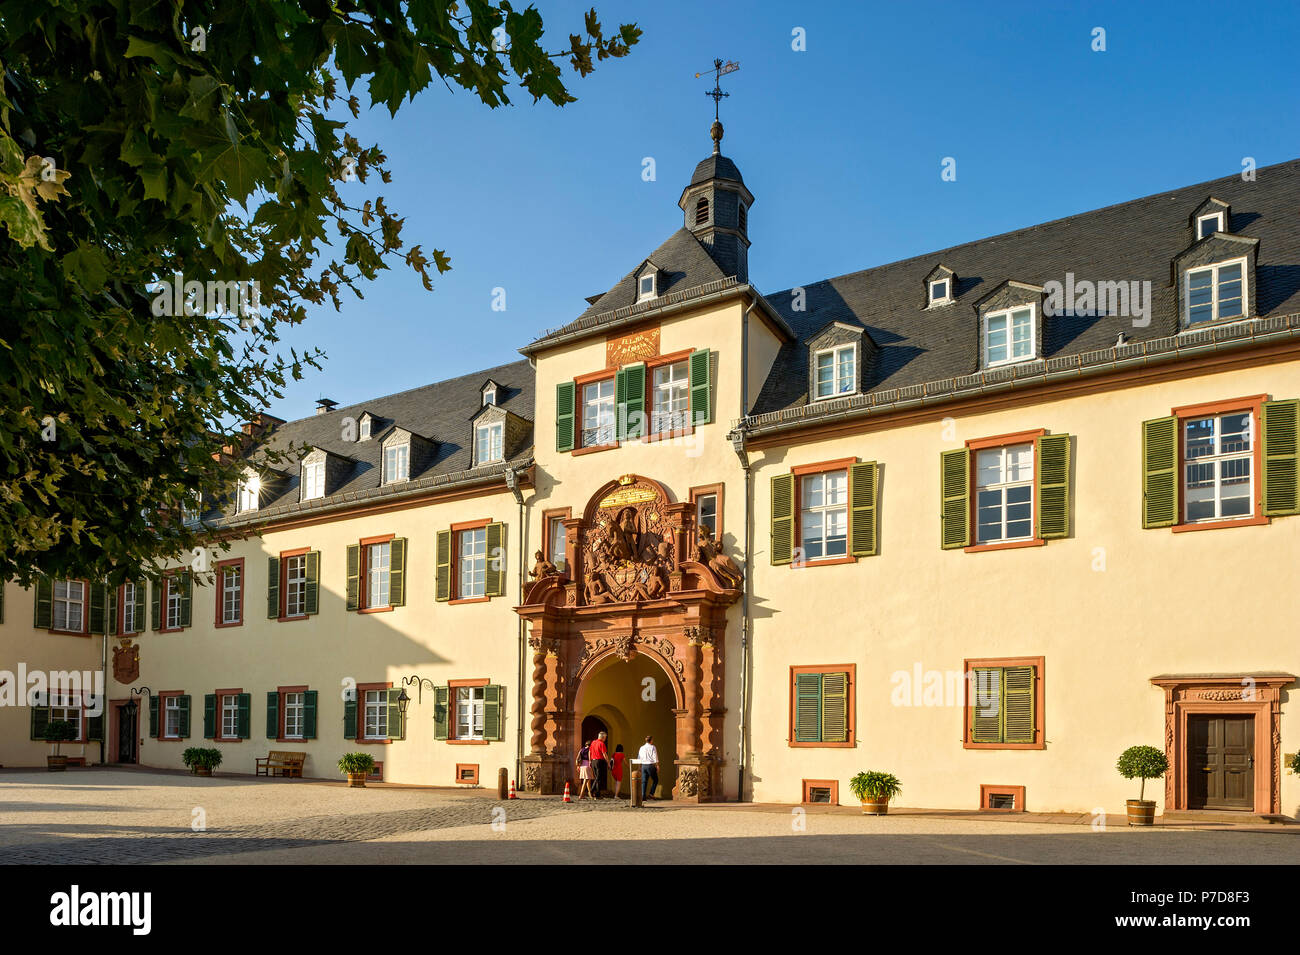 Landgrave il castello barocco e gate superiore, Bad Homburg vor der Höhe, Hesse, Germania Foto Stock